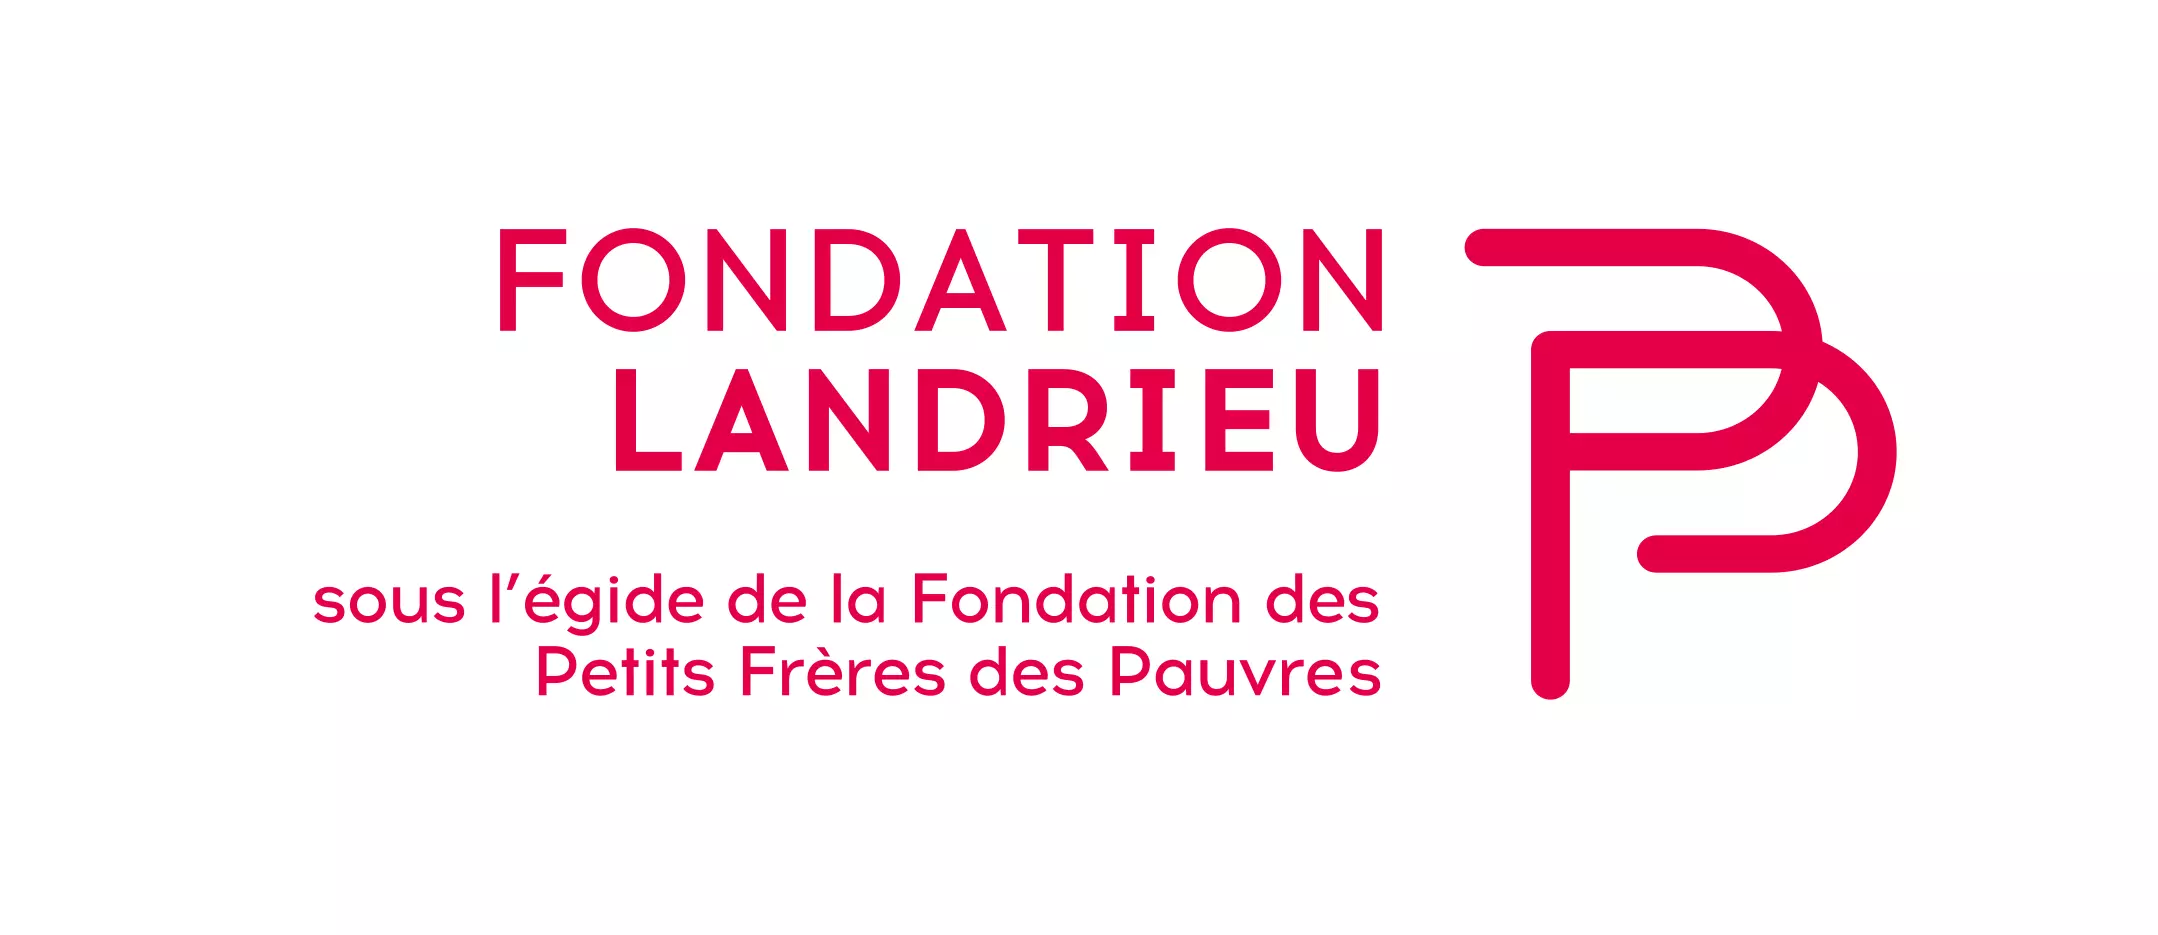 La Fondation Mireille et Pierre Landrieu